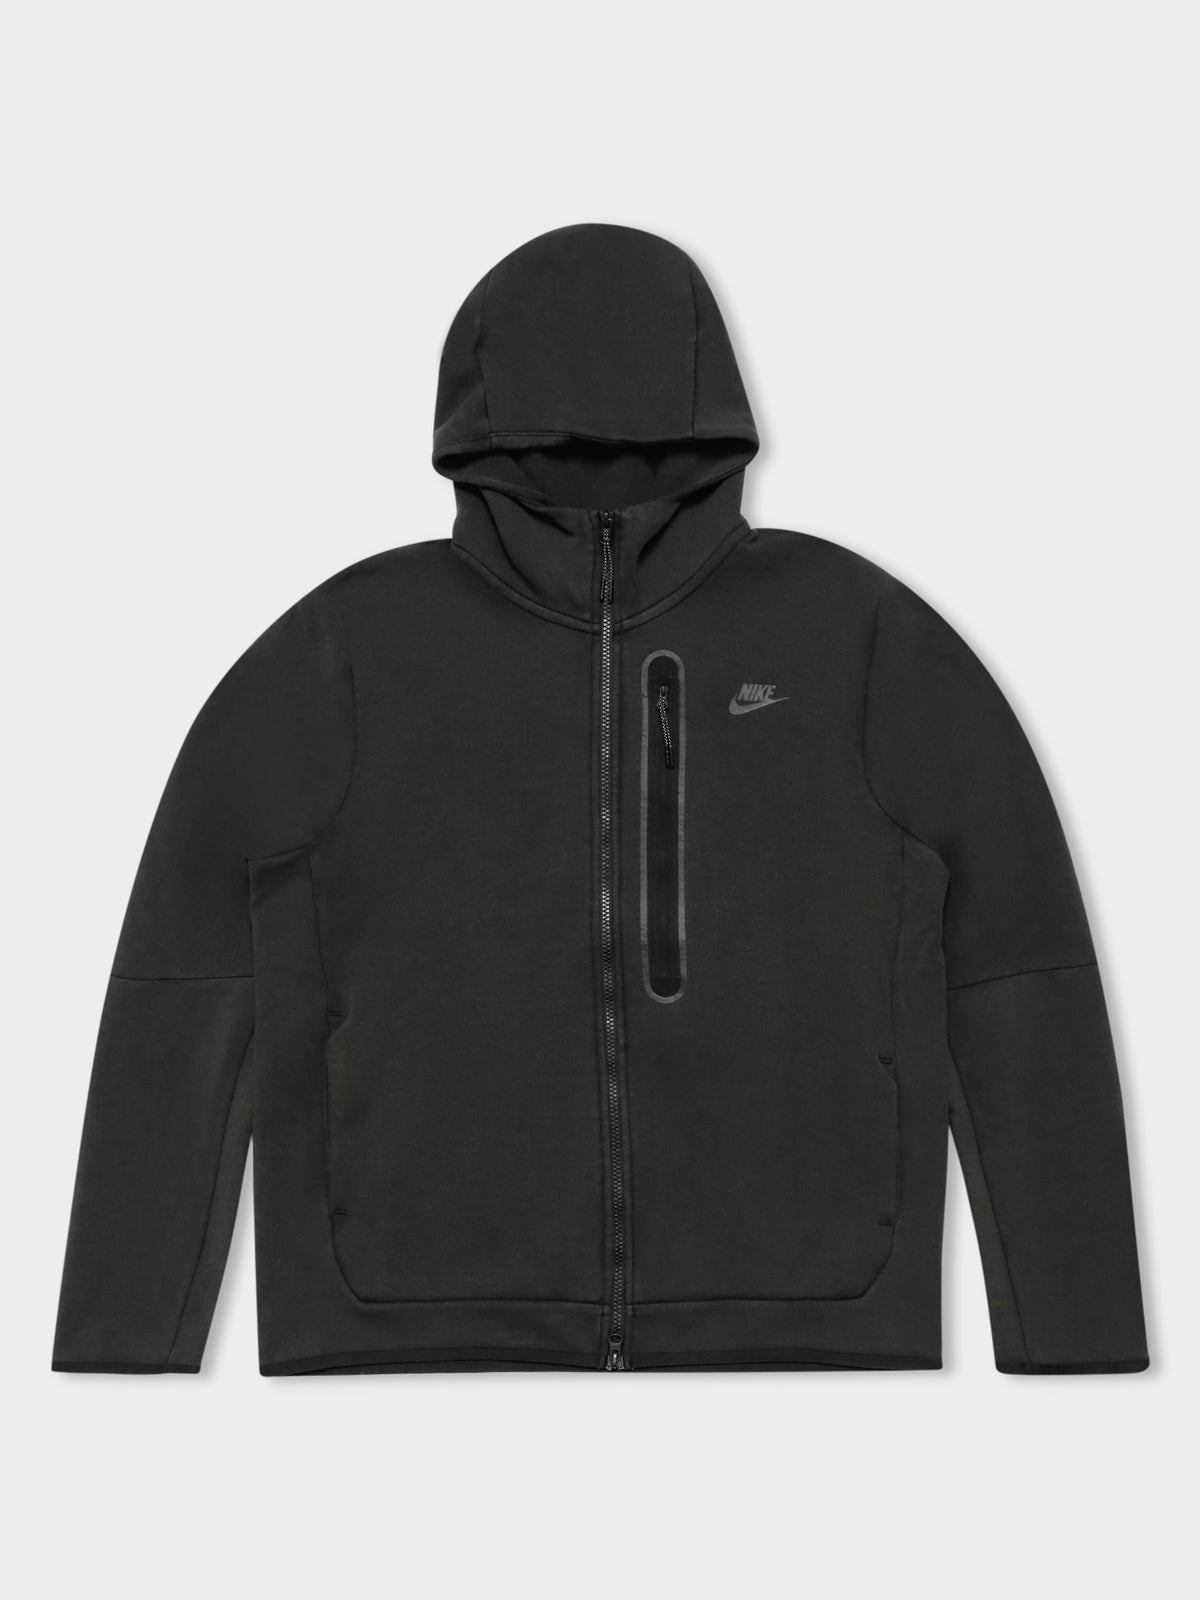 NSW Tech Fleece Jacket in Washed Black